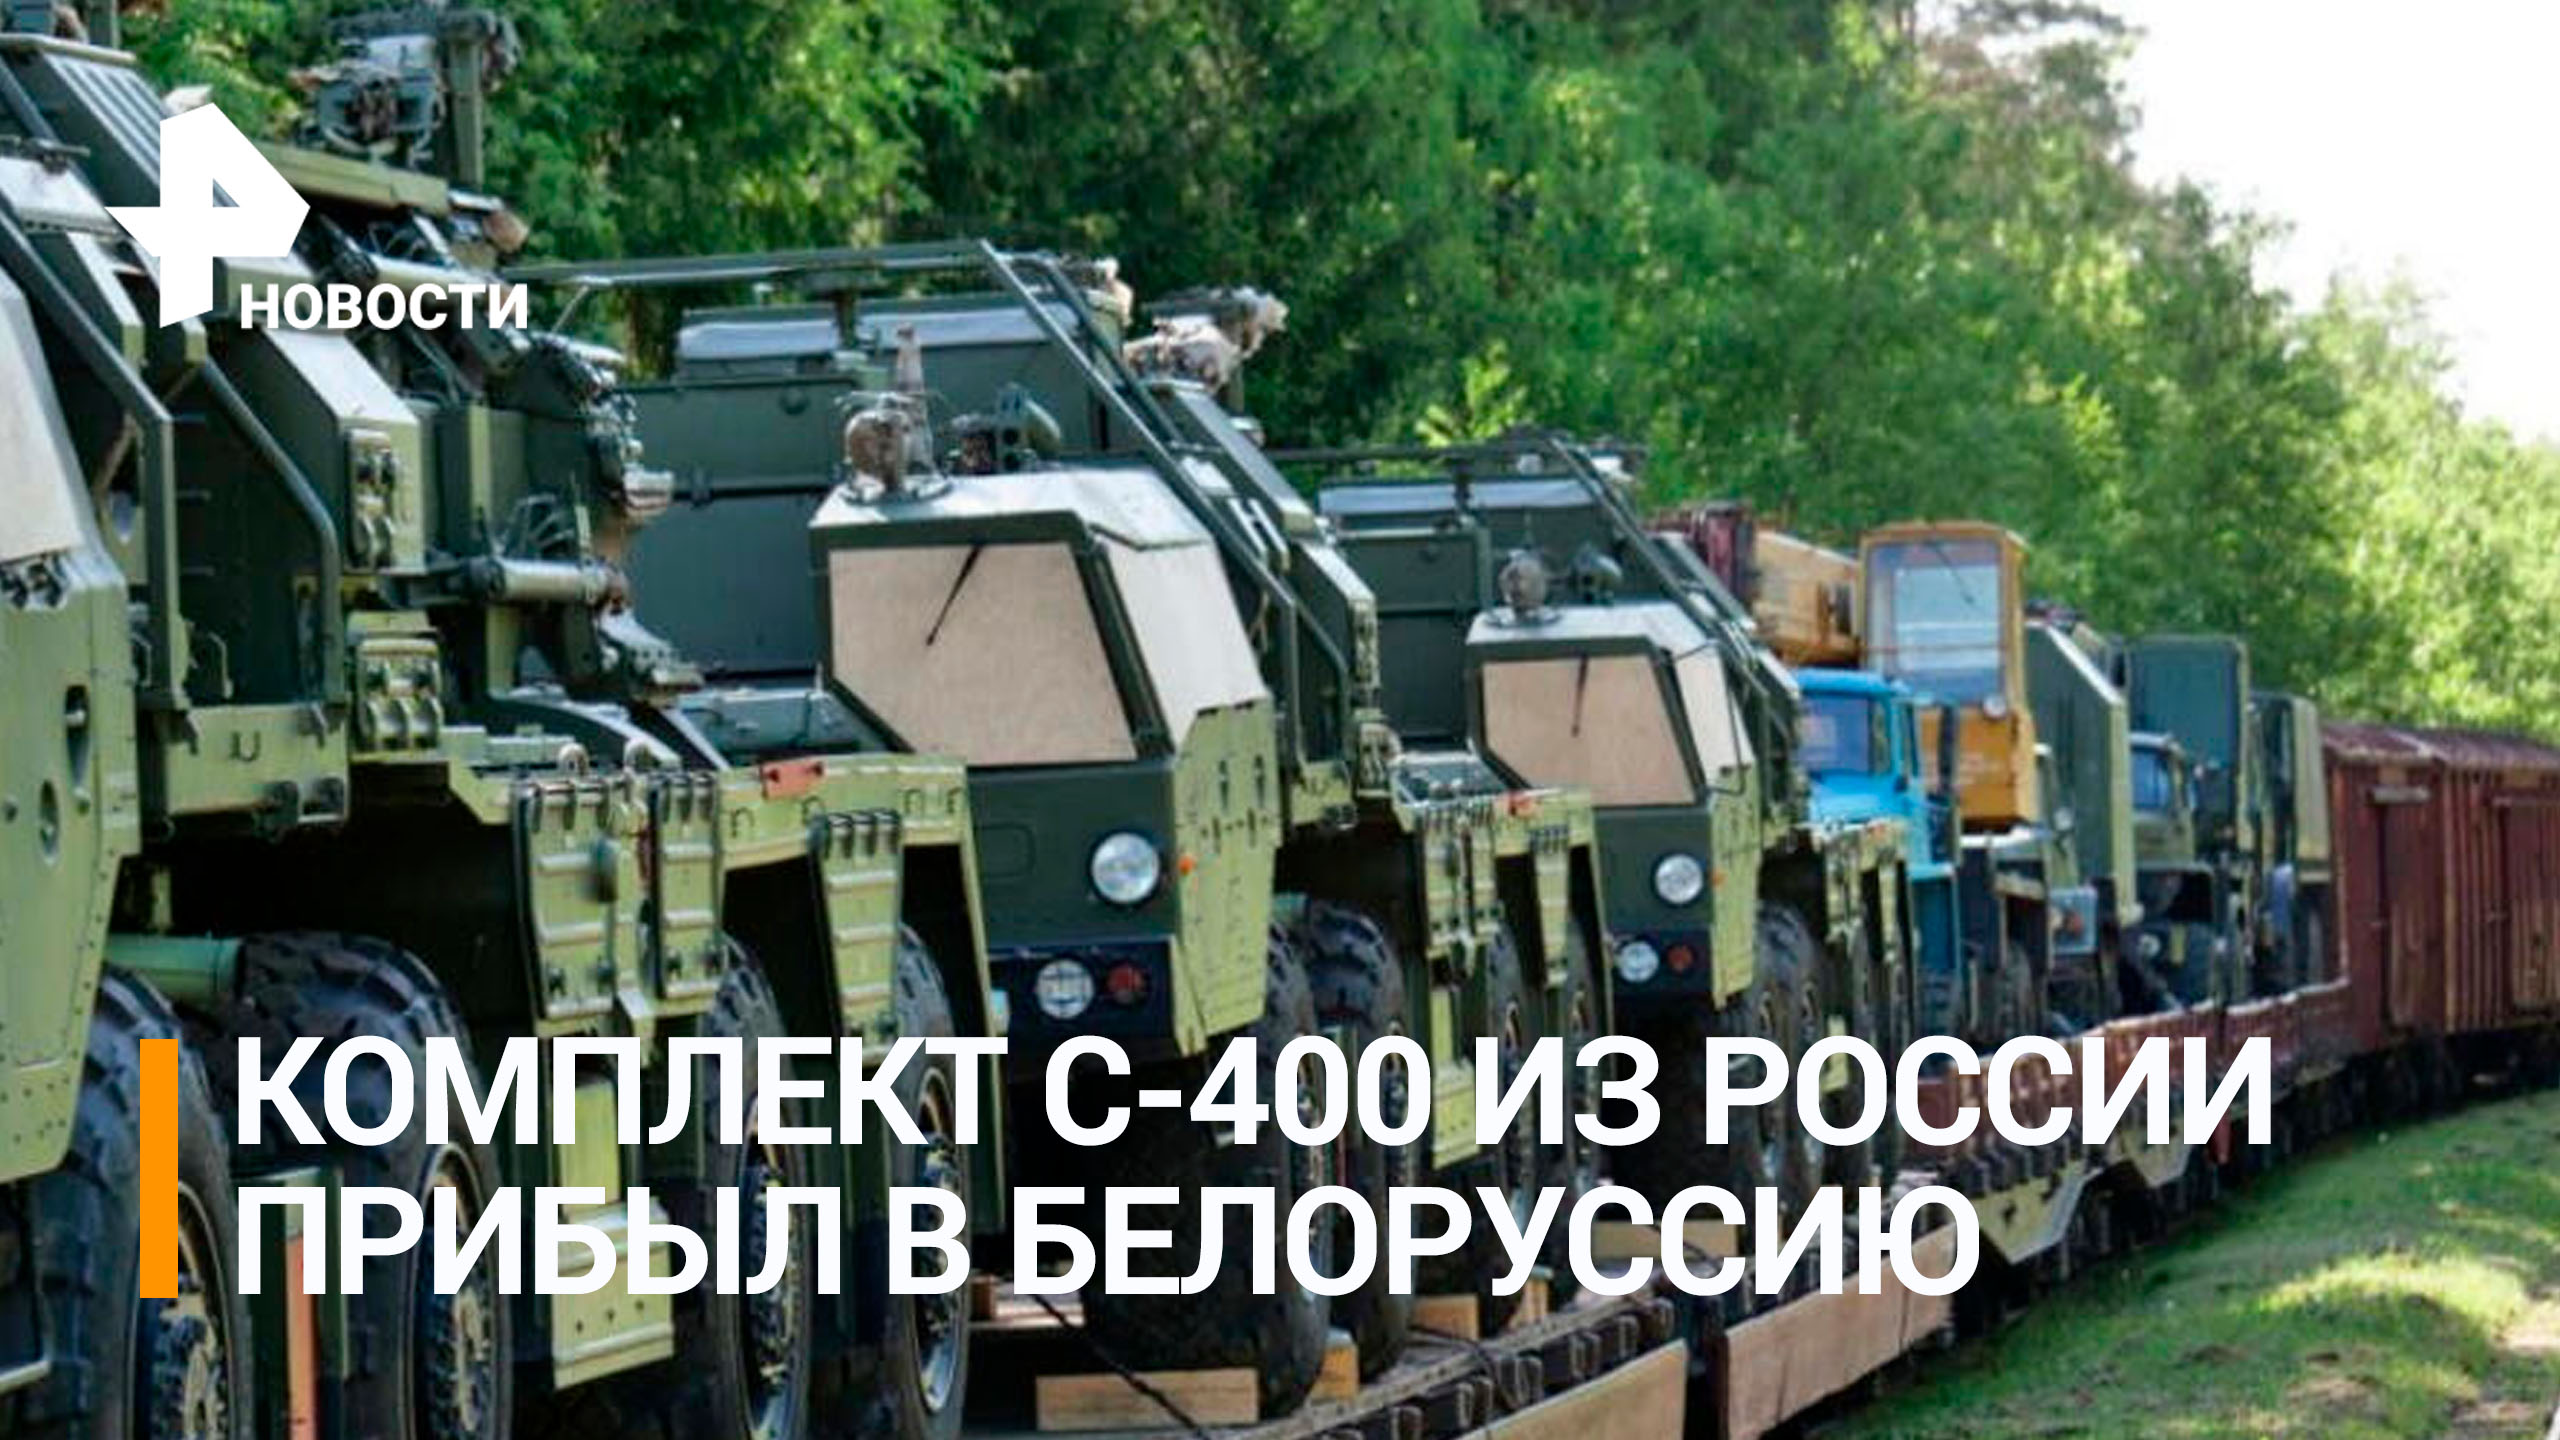 Комплект С-400 из России прибыл в Белоруссию / РЕН Новости